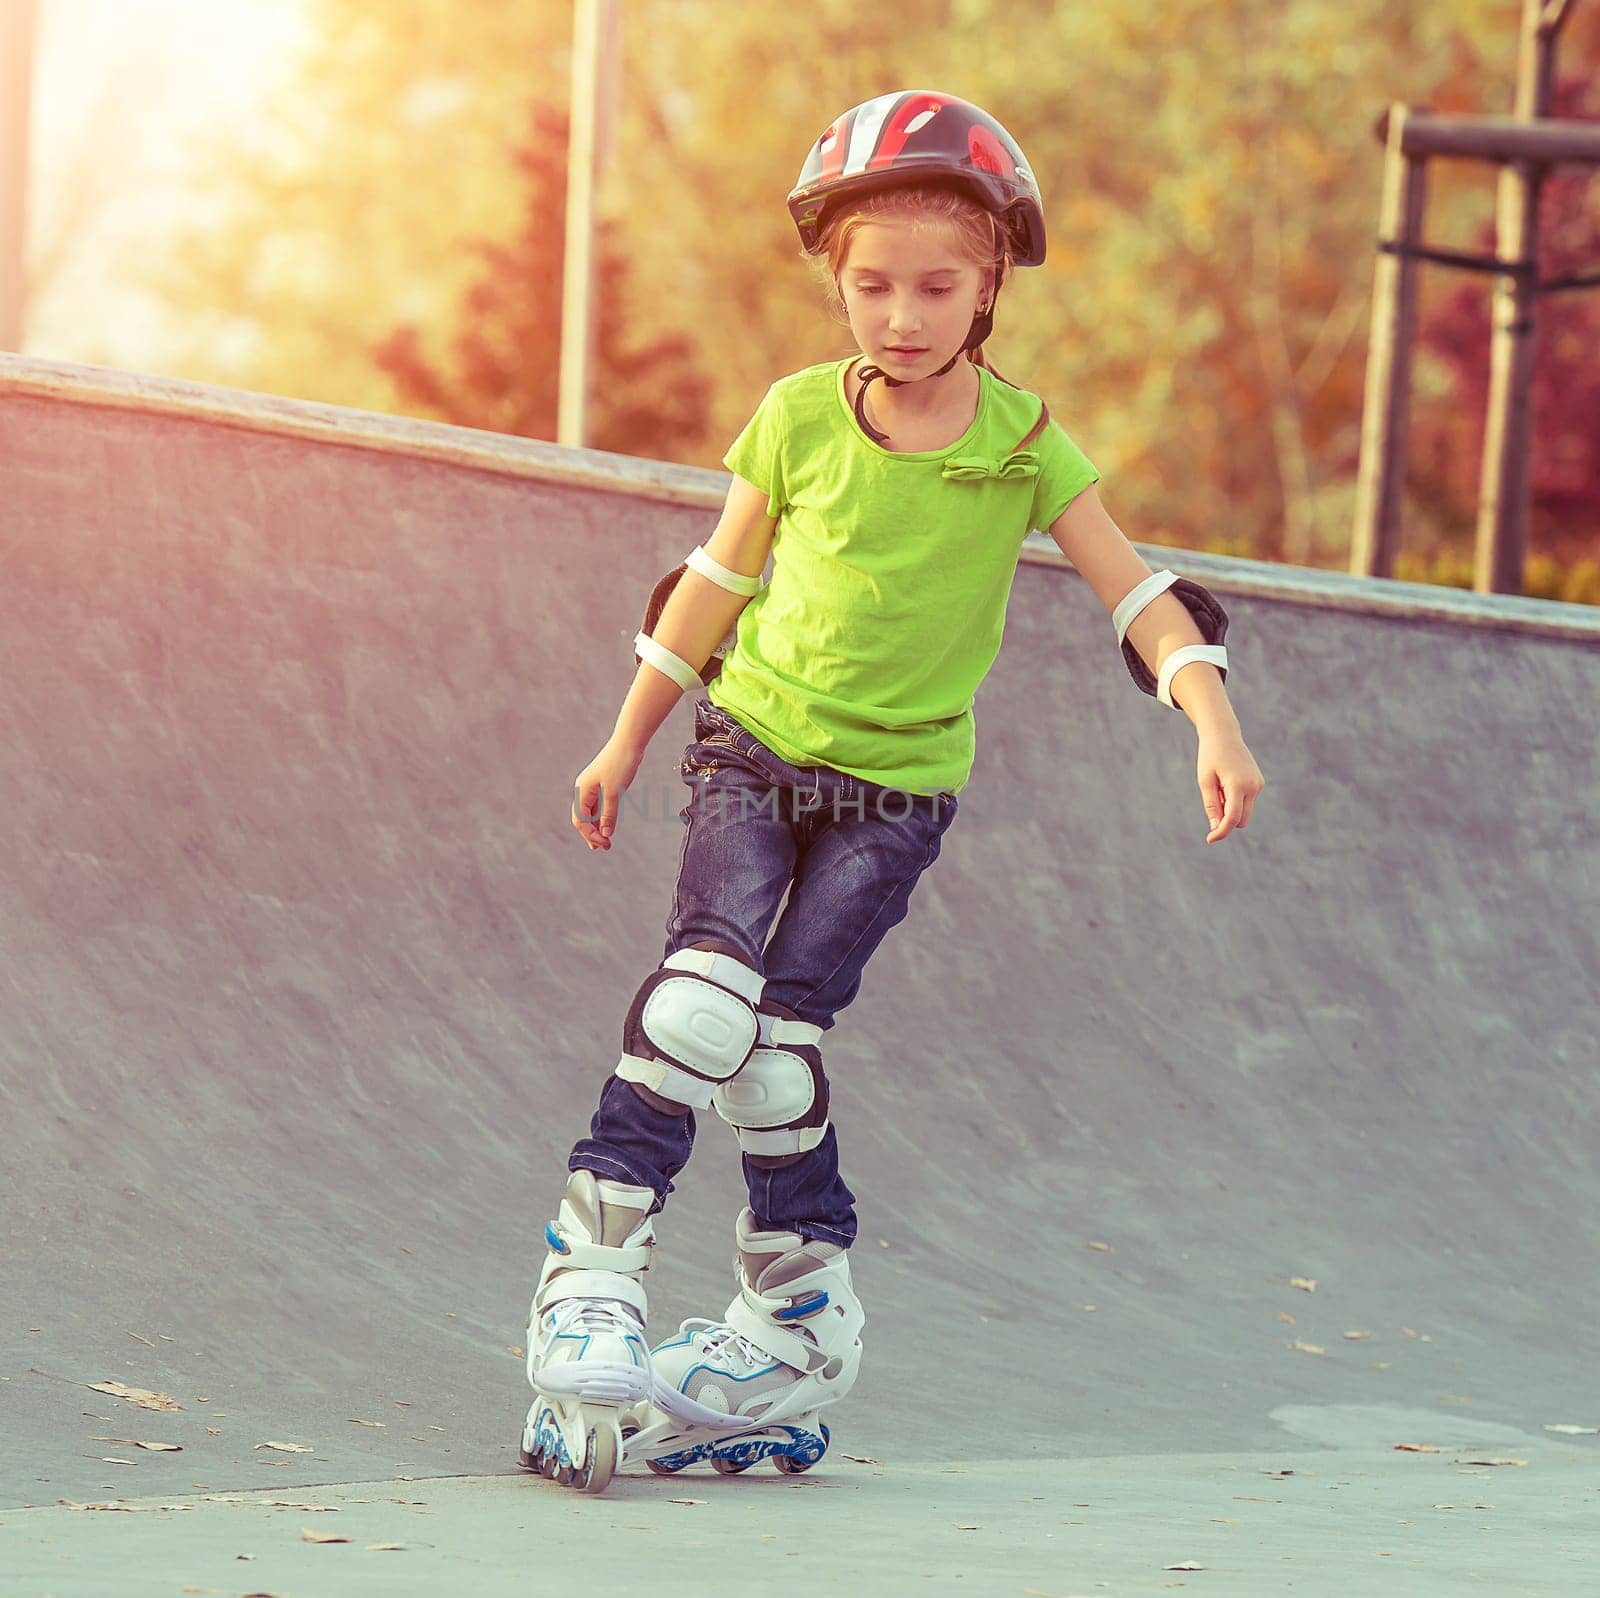 Little girl on roller skates by GekaSkr